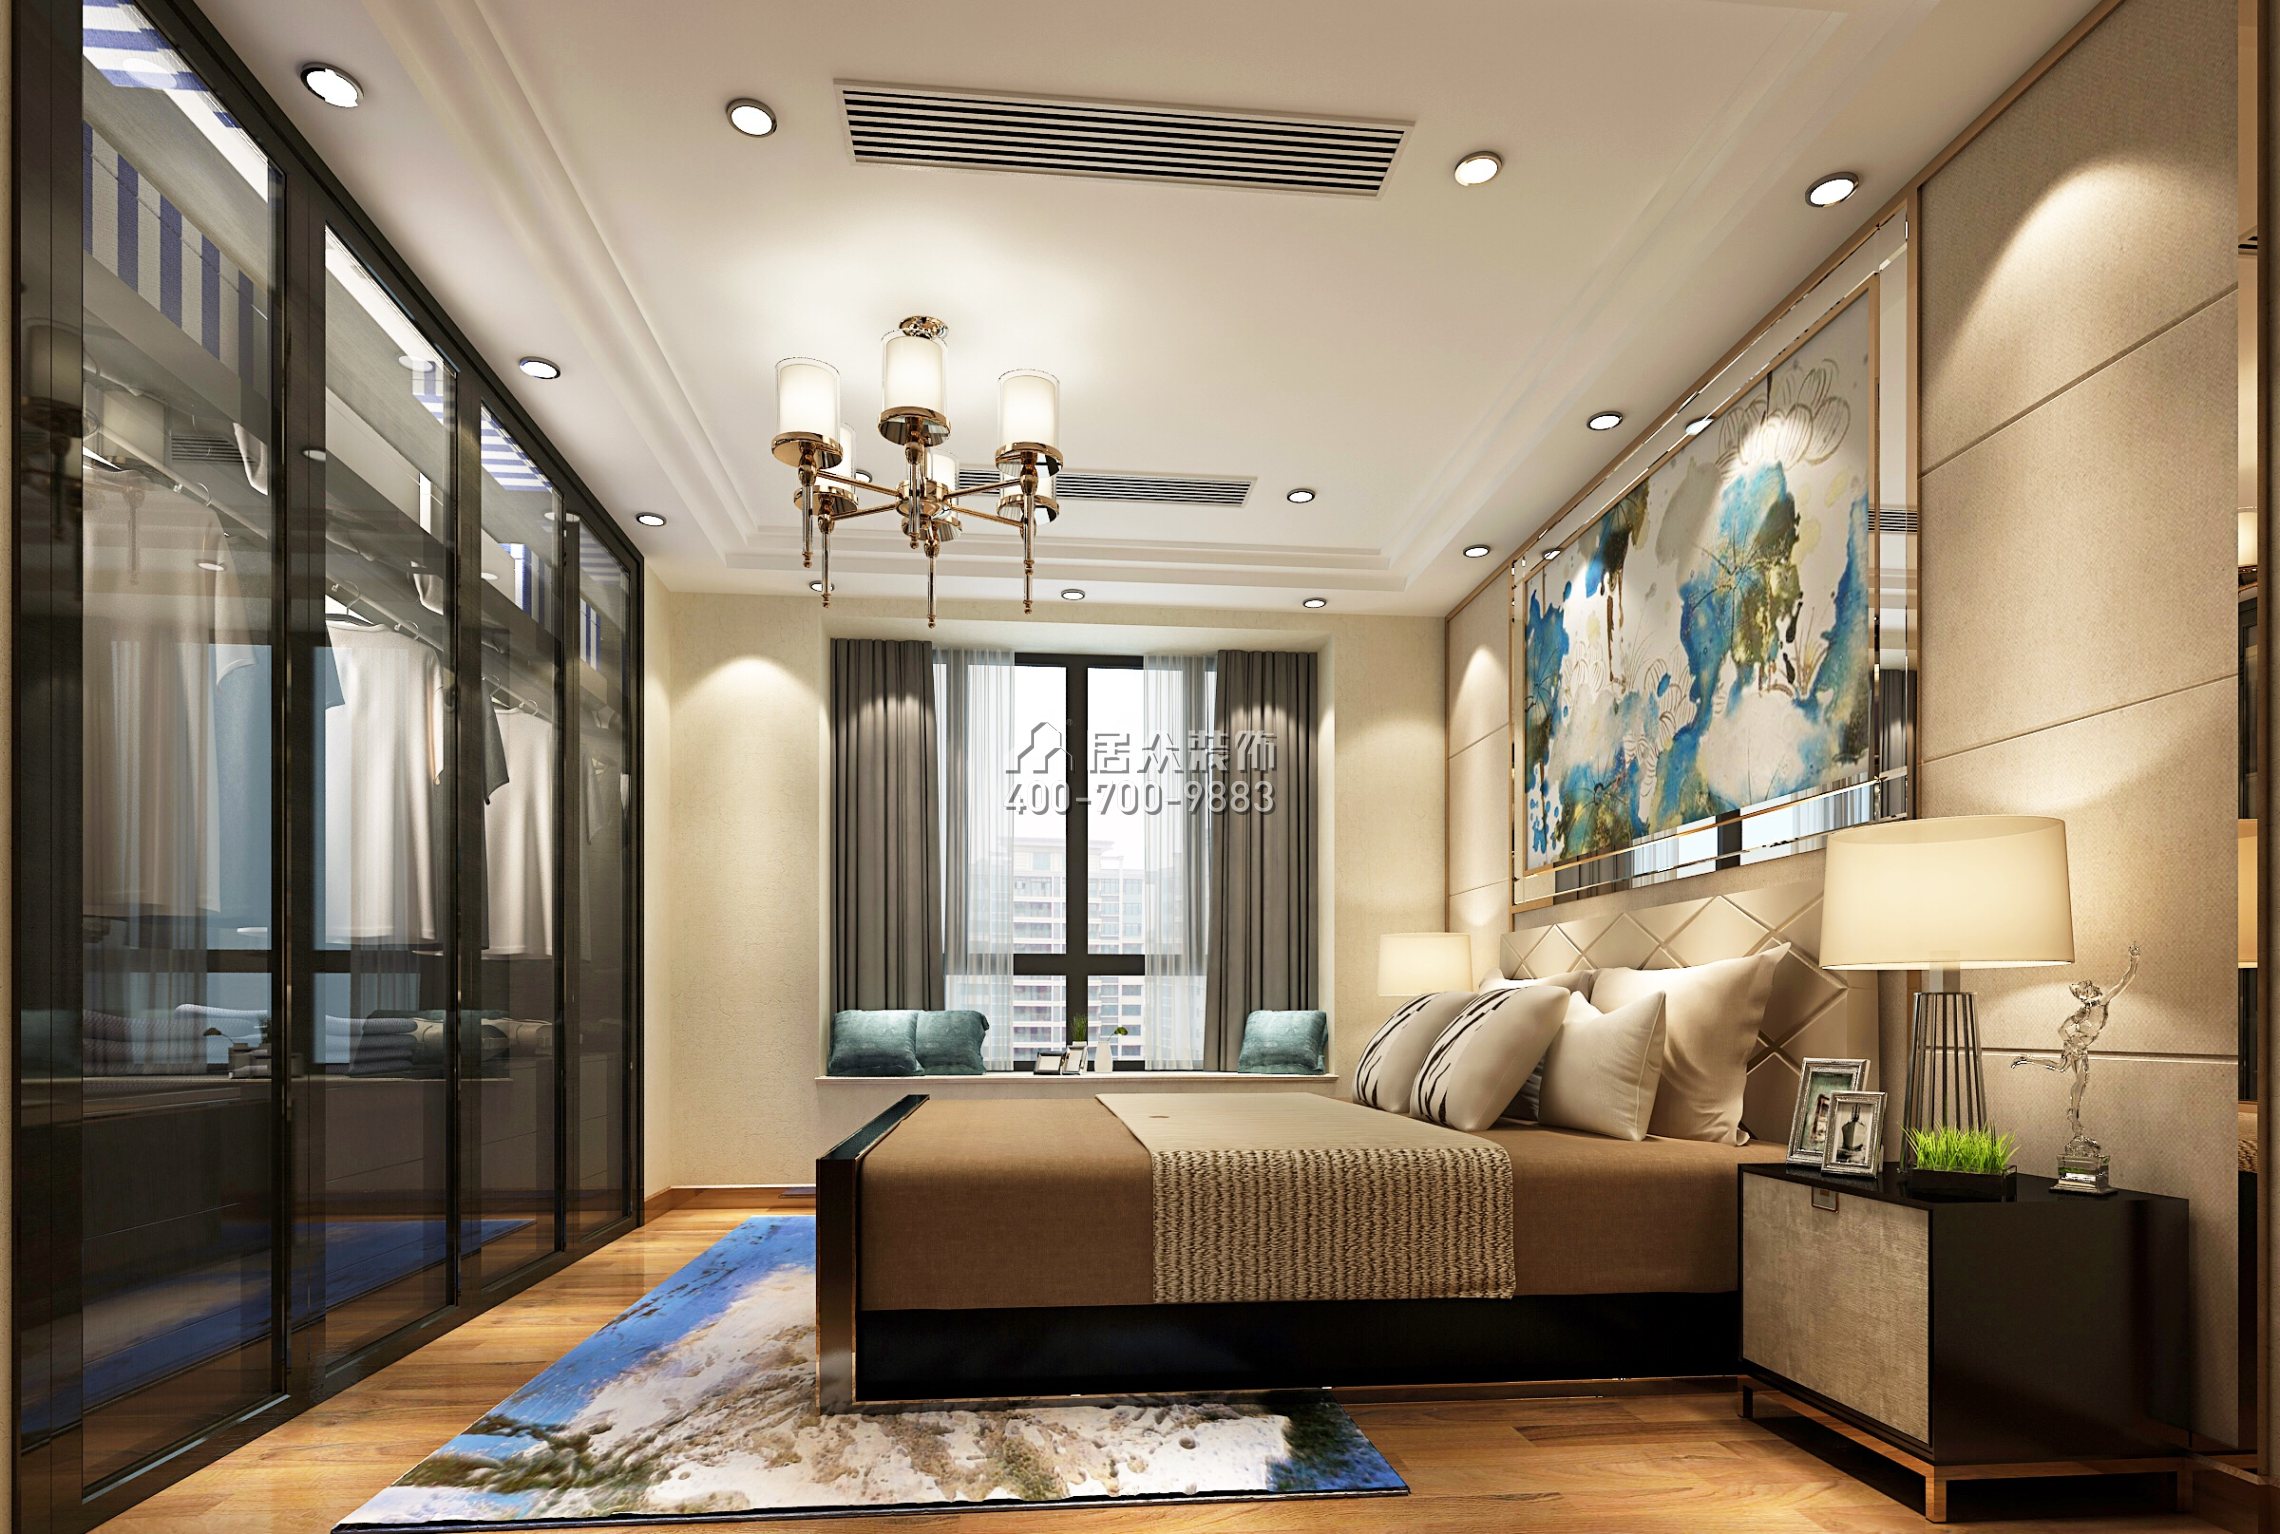 大信君汇湾240平方米新古典风格平层户型卧室kok电竞平台效果图